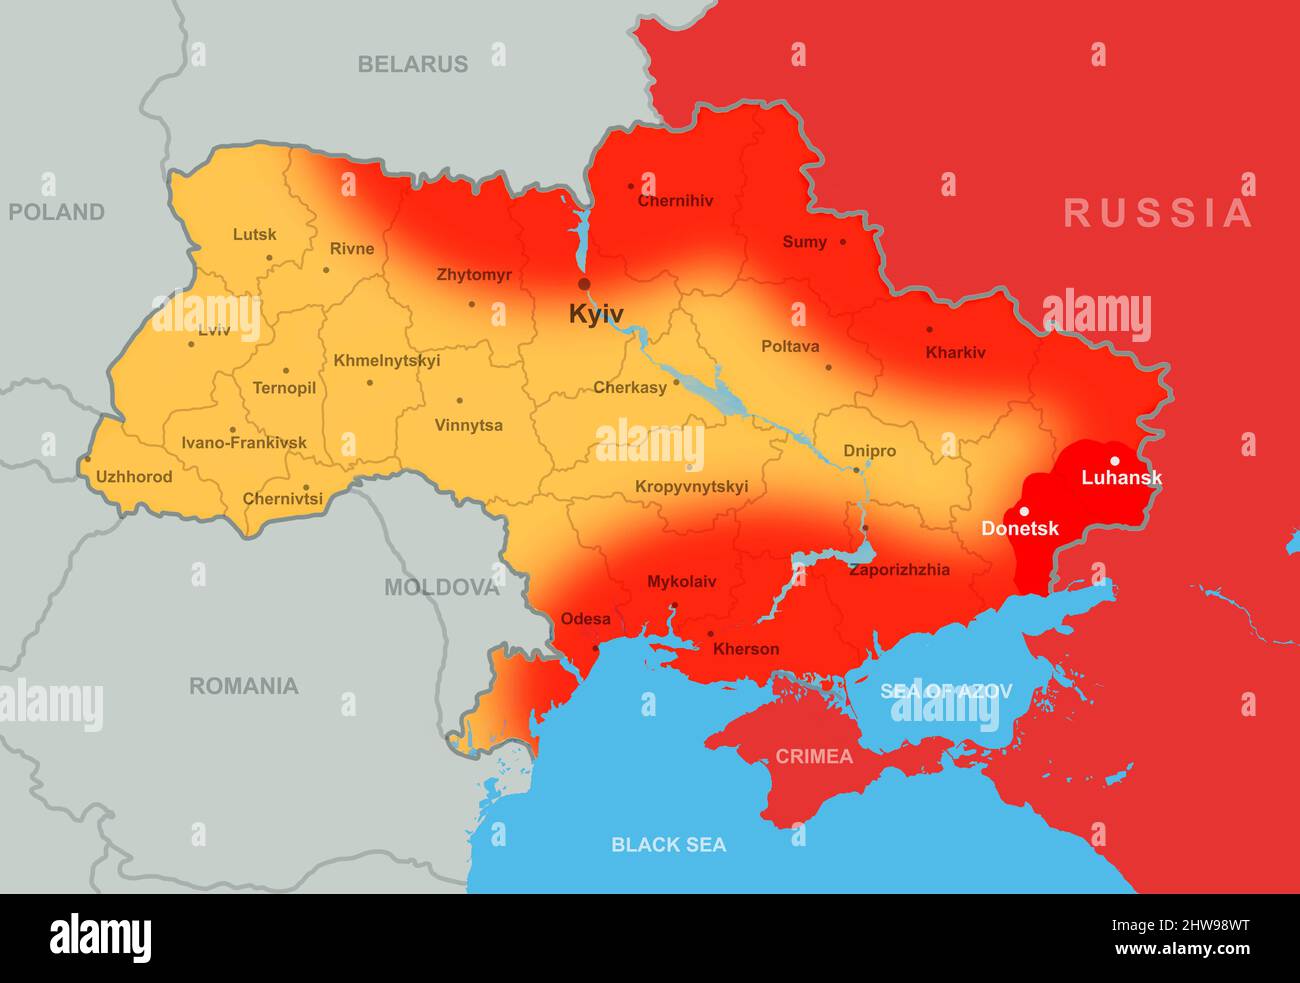 Guerre en Ukraine, territoire de la Russie et de l'Ukraine sur la carte de l'Europe. Frontières ukrainiennes avec la région du Donbass, invasion russe en Ukraine sur la politique militaire Banque D'Images